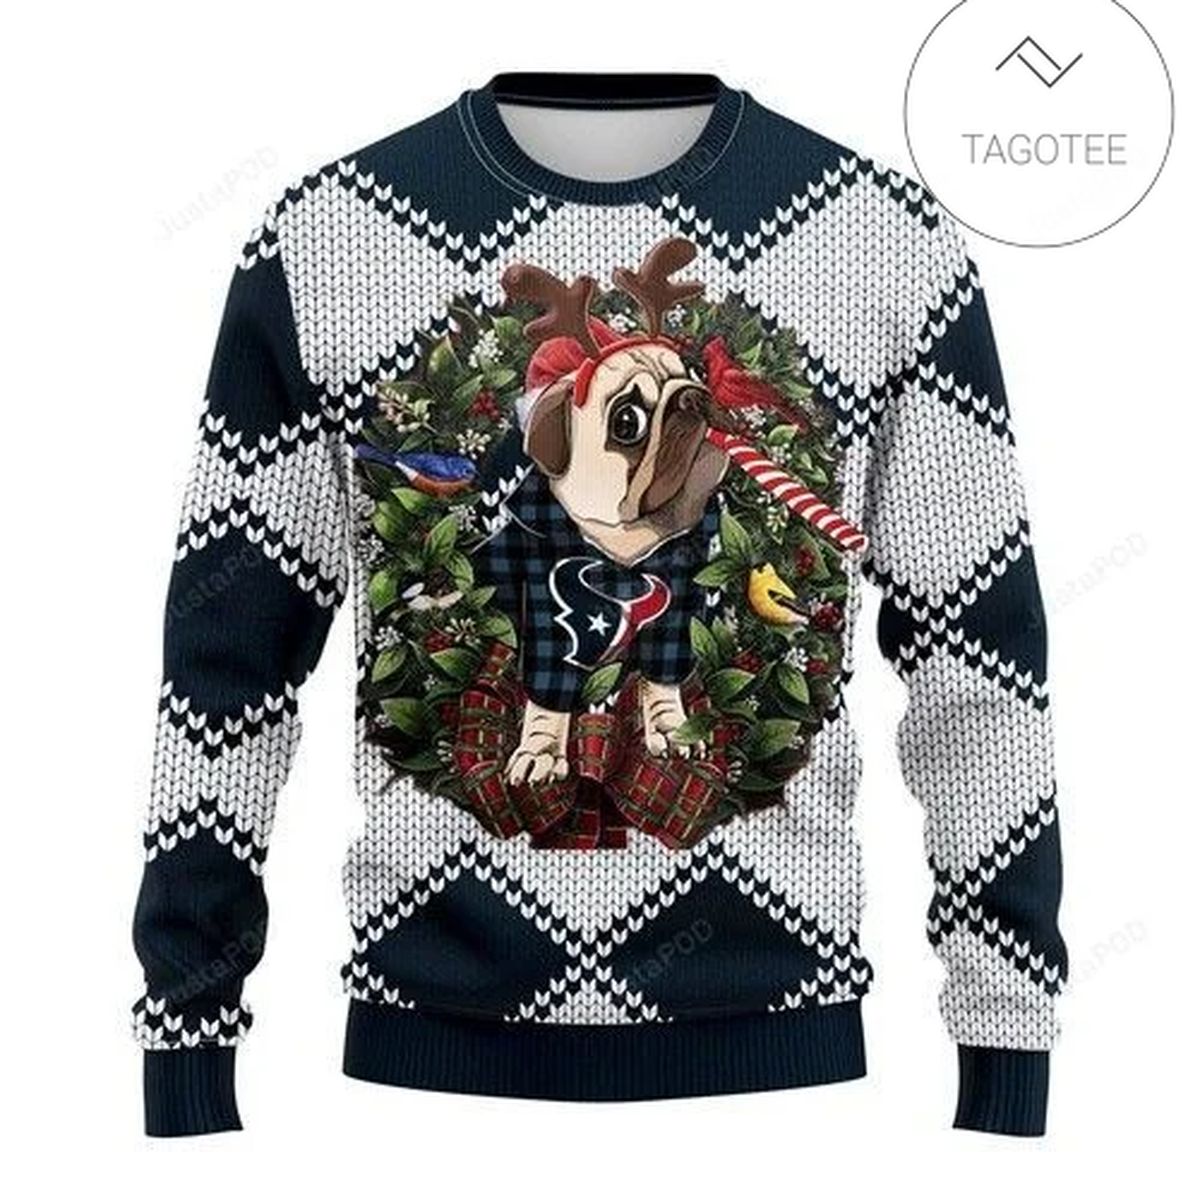 Nfl Houston Texans Pug Dog Ugly Christmas Sweater